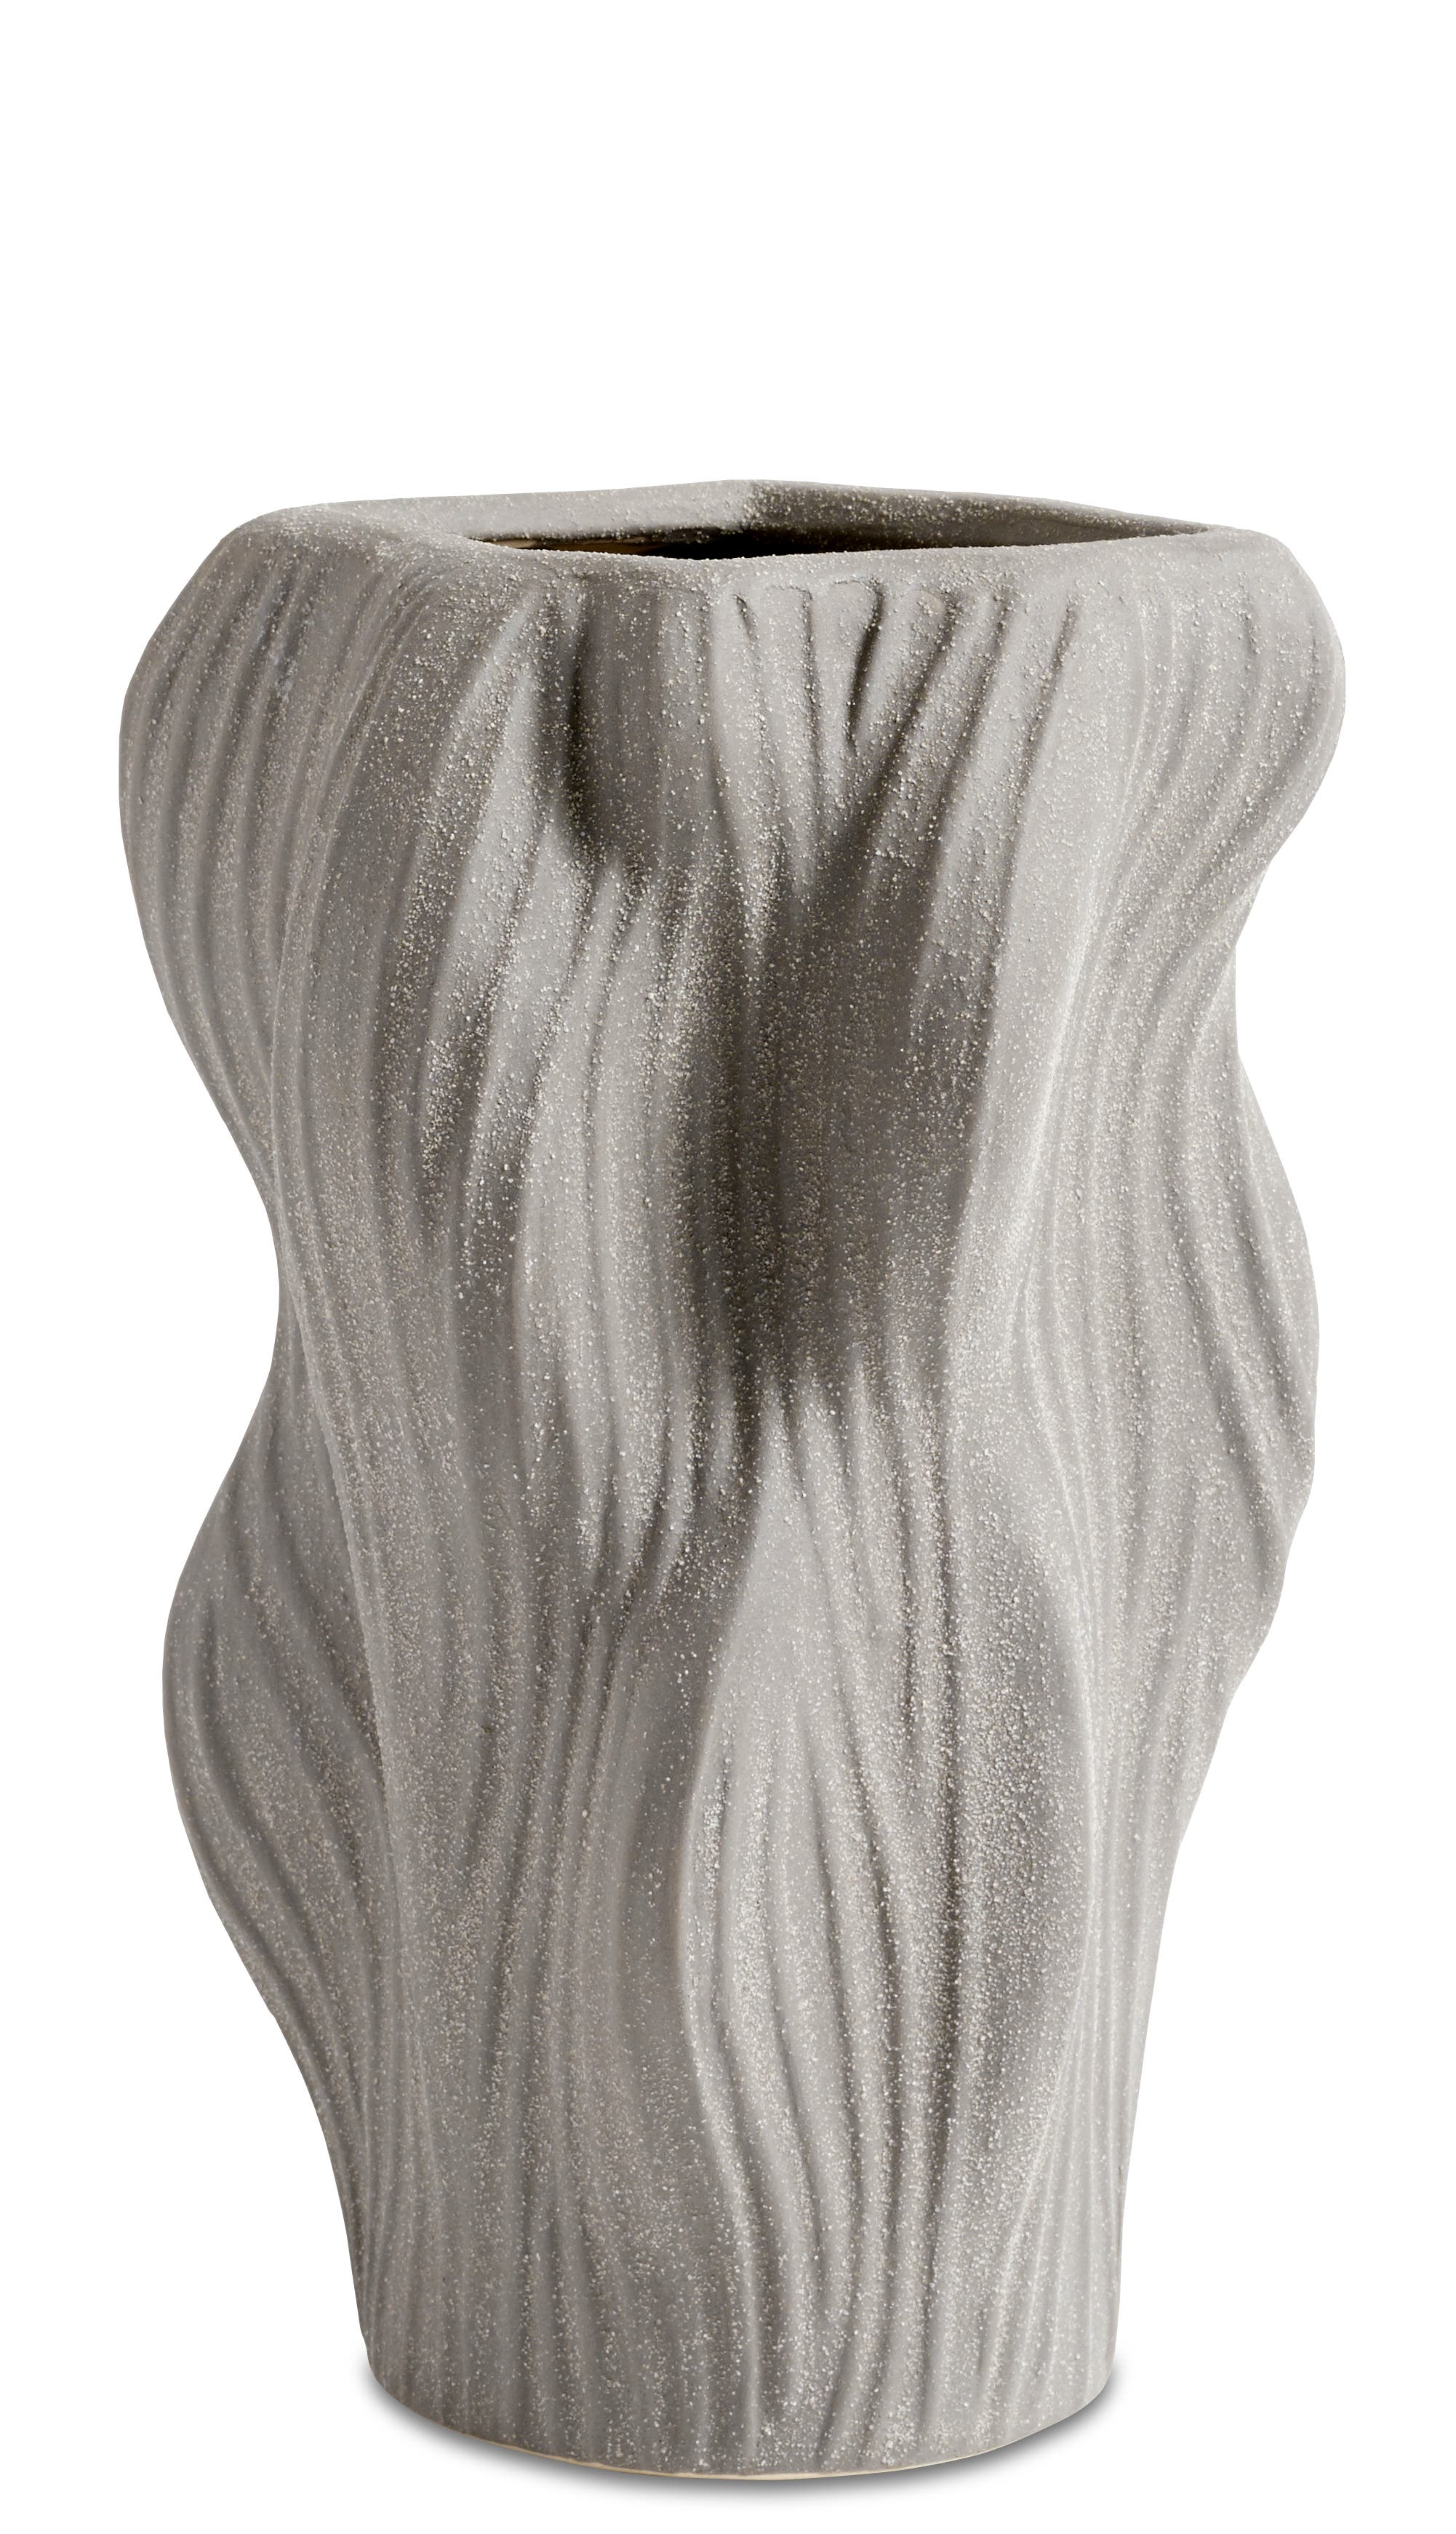 Water ripple vas